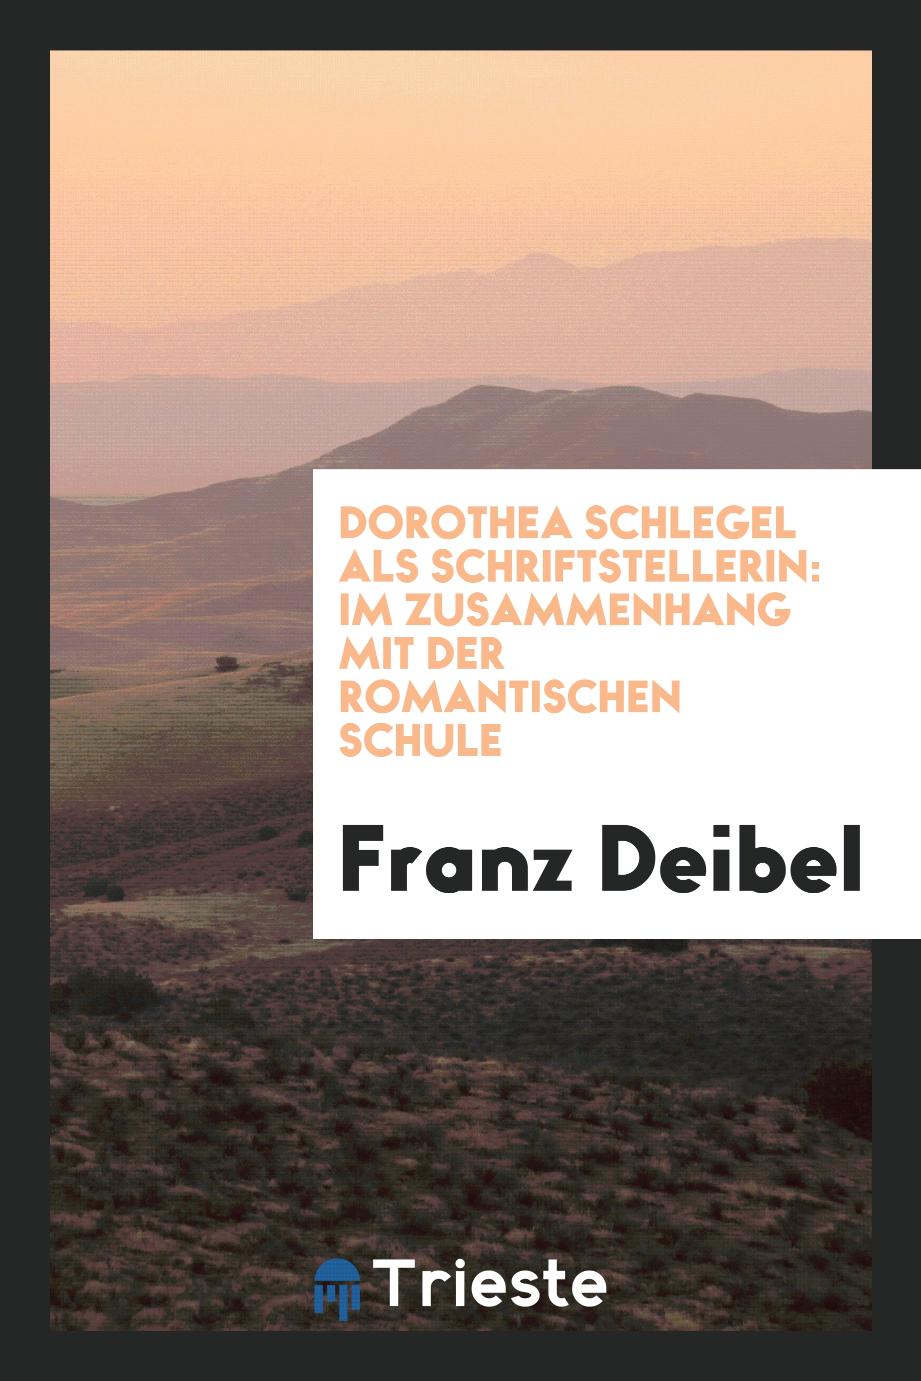 Dorothea Schlegel als Schriftstellerin: im Zusammenhang mit der romantischen Schule